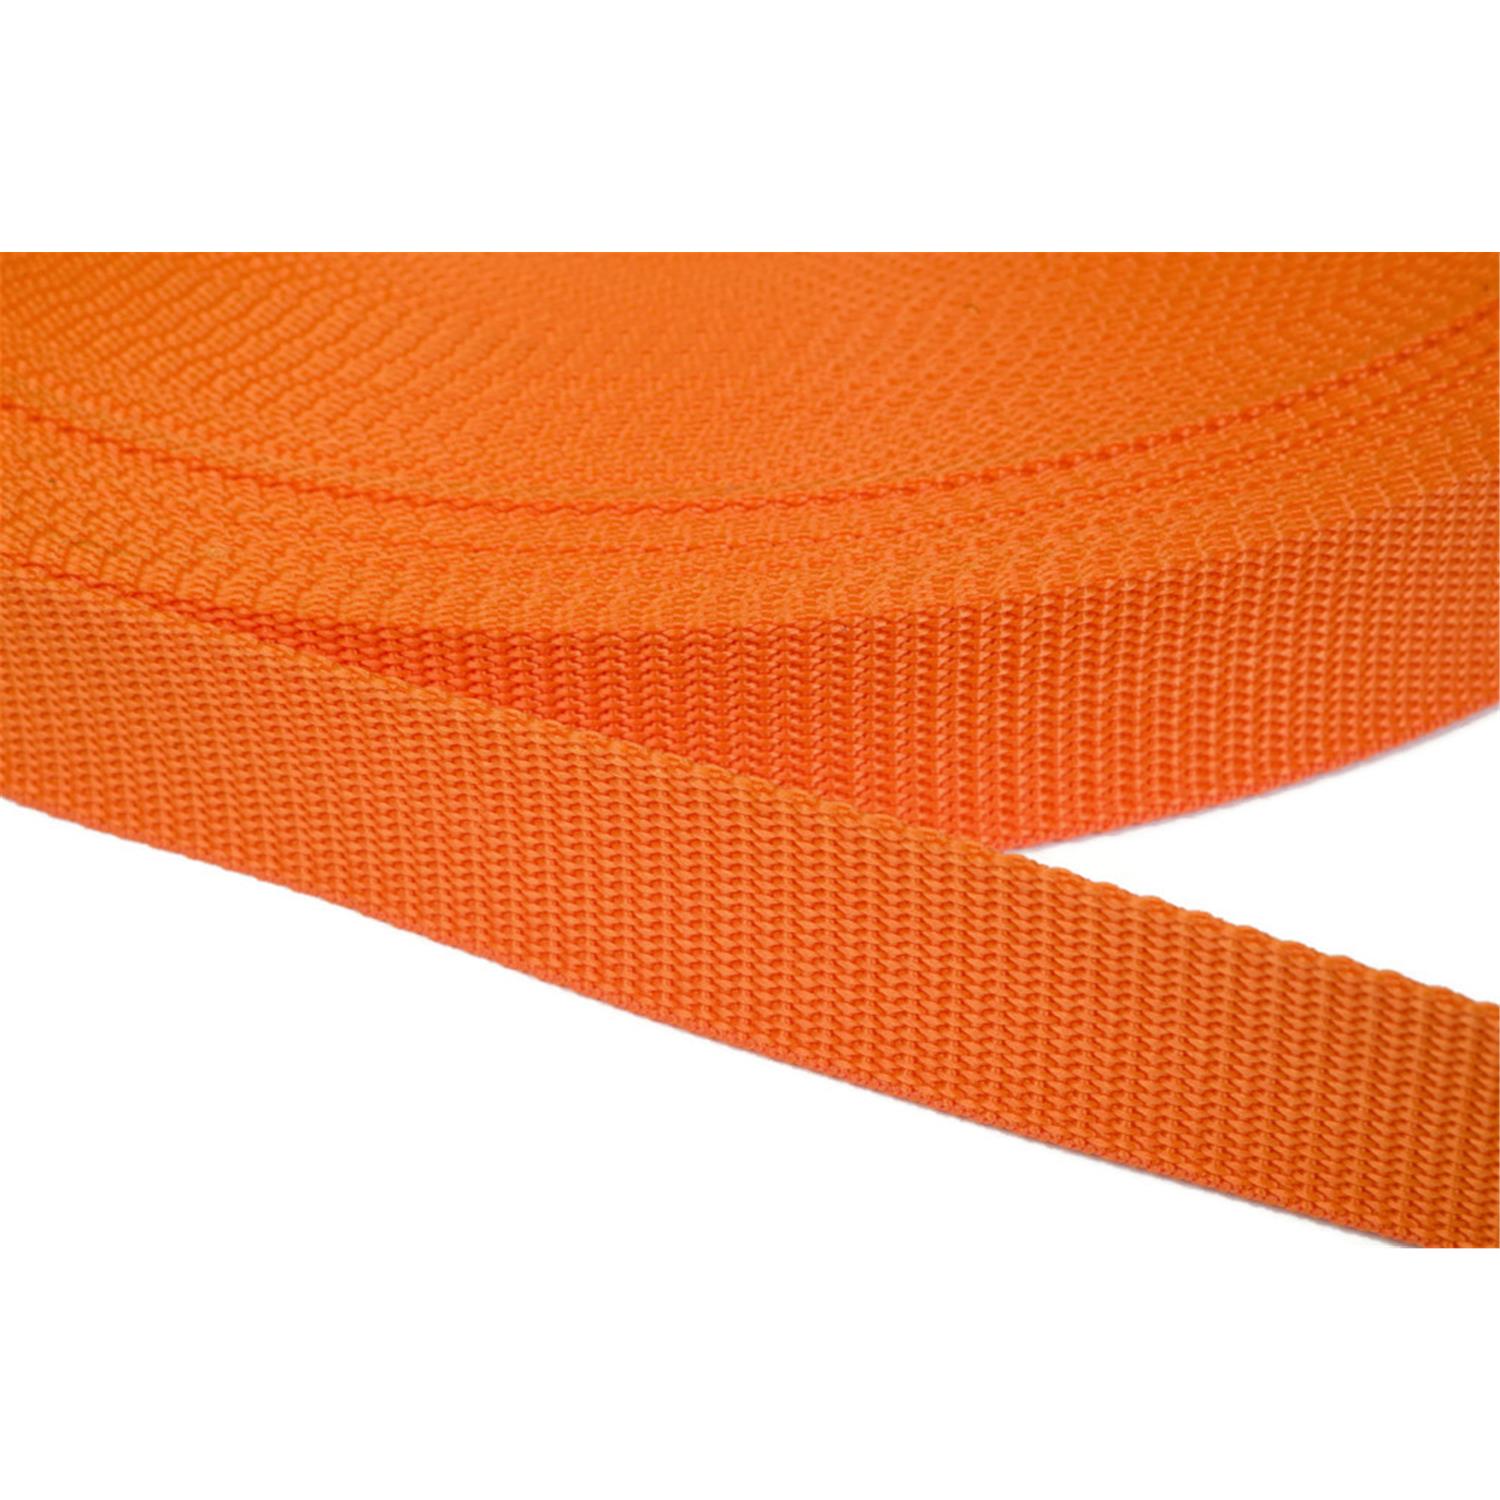 Gurtband 25mm breit aus Polypropylen in 41 Farben 11 - orange 50 Meter